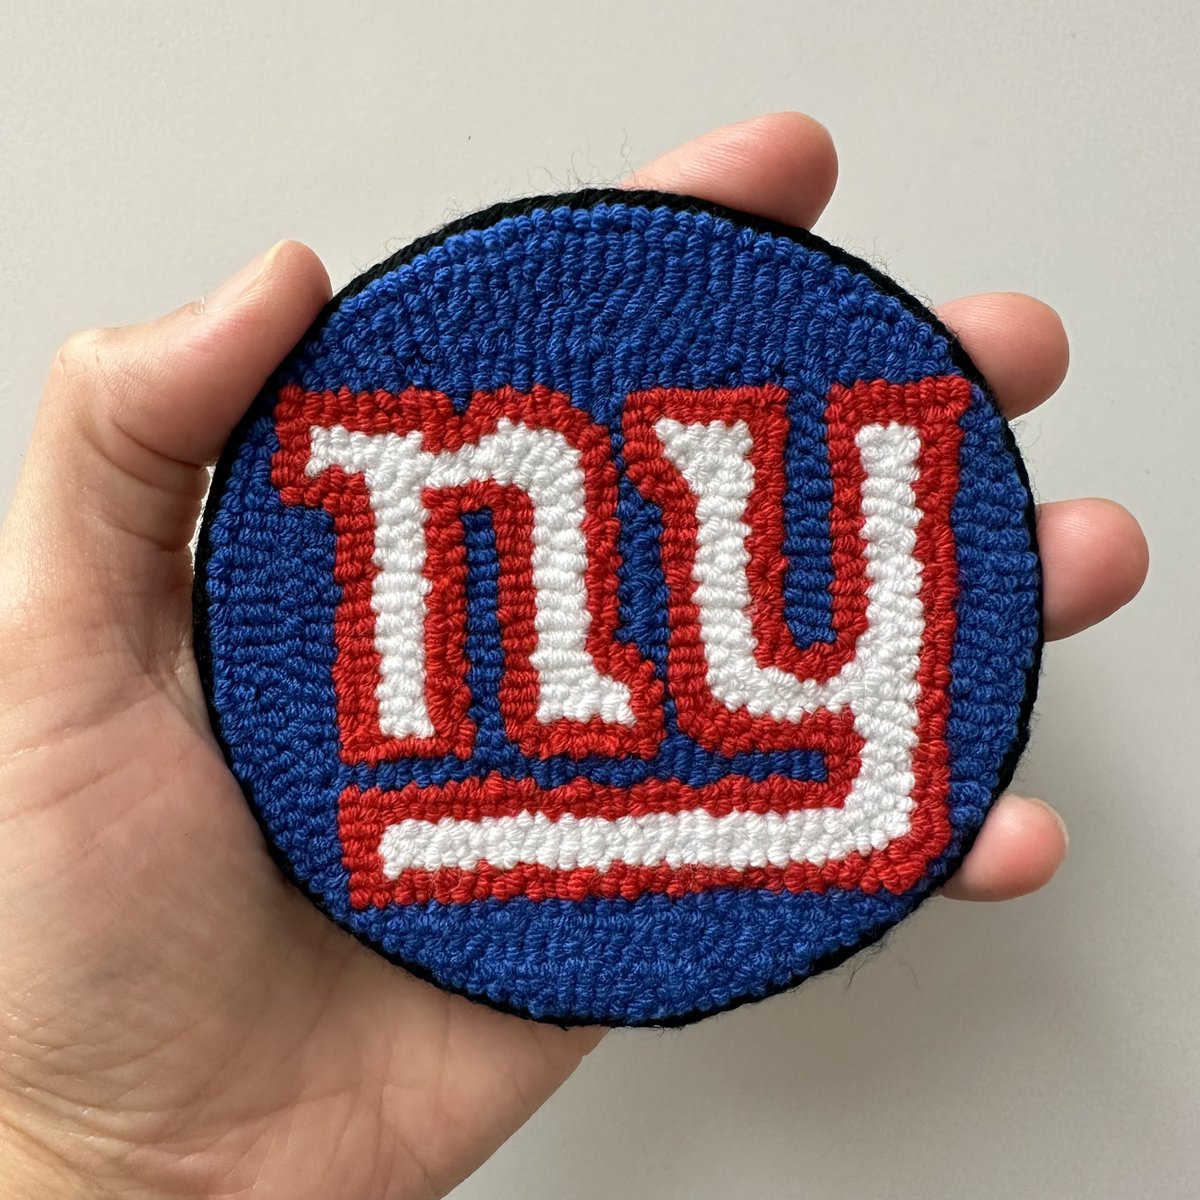 My handmade New York Giants mug rugs. #newyork #NewYorkGiants #Giants #NFLTwitter #NFL #coasters #gift #mugrug #GiantsNation #Giantsofthecity